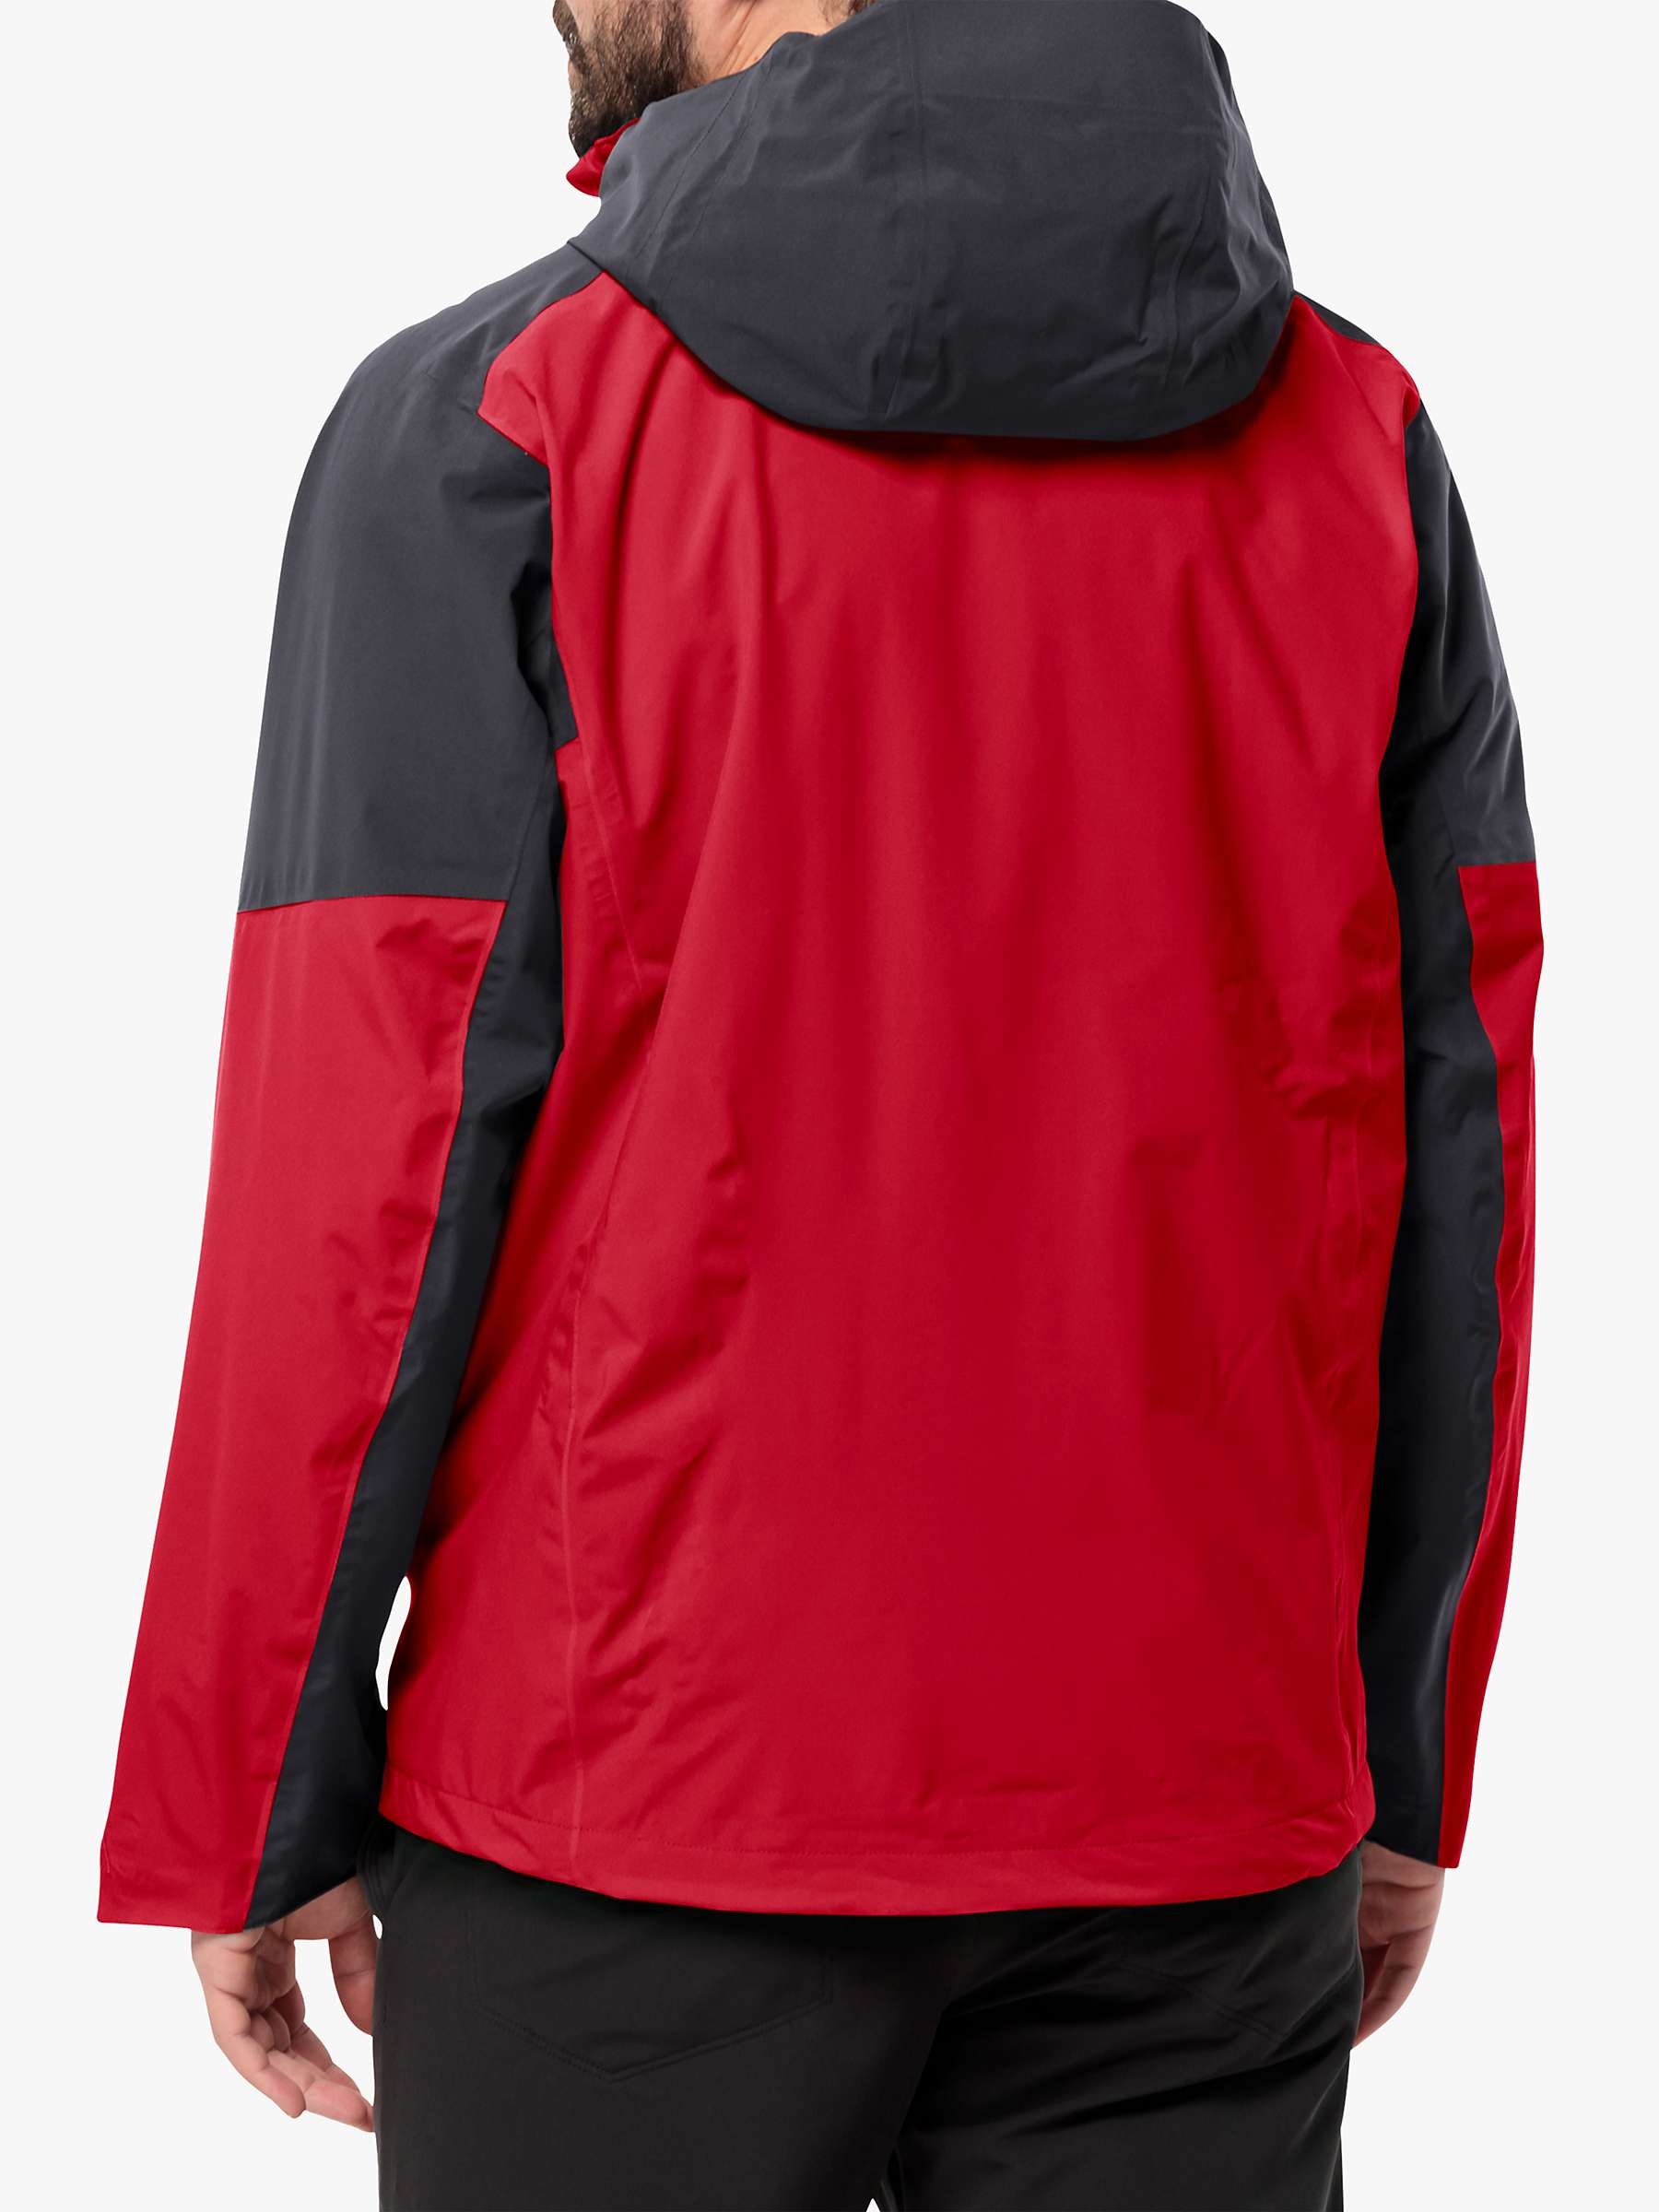 Buy Jack Wolfskin Eagle Peak 2 Layer Jacket, Red Online at johnlewis.com